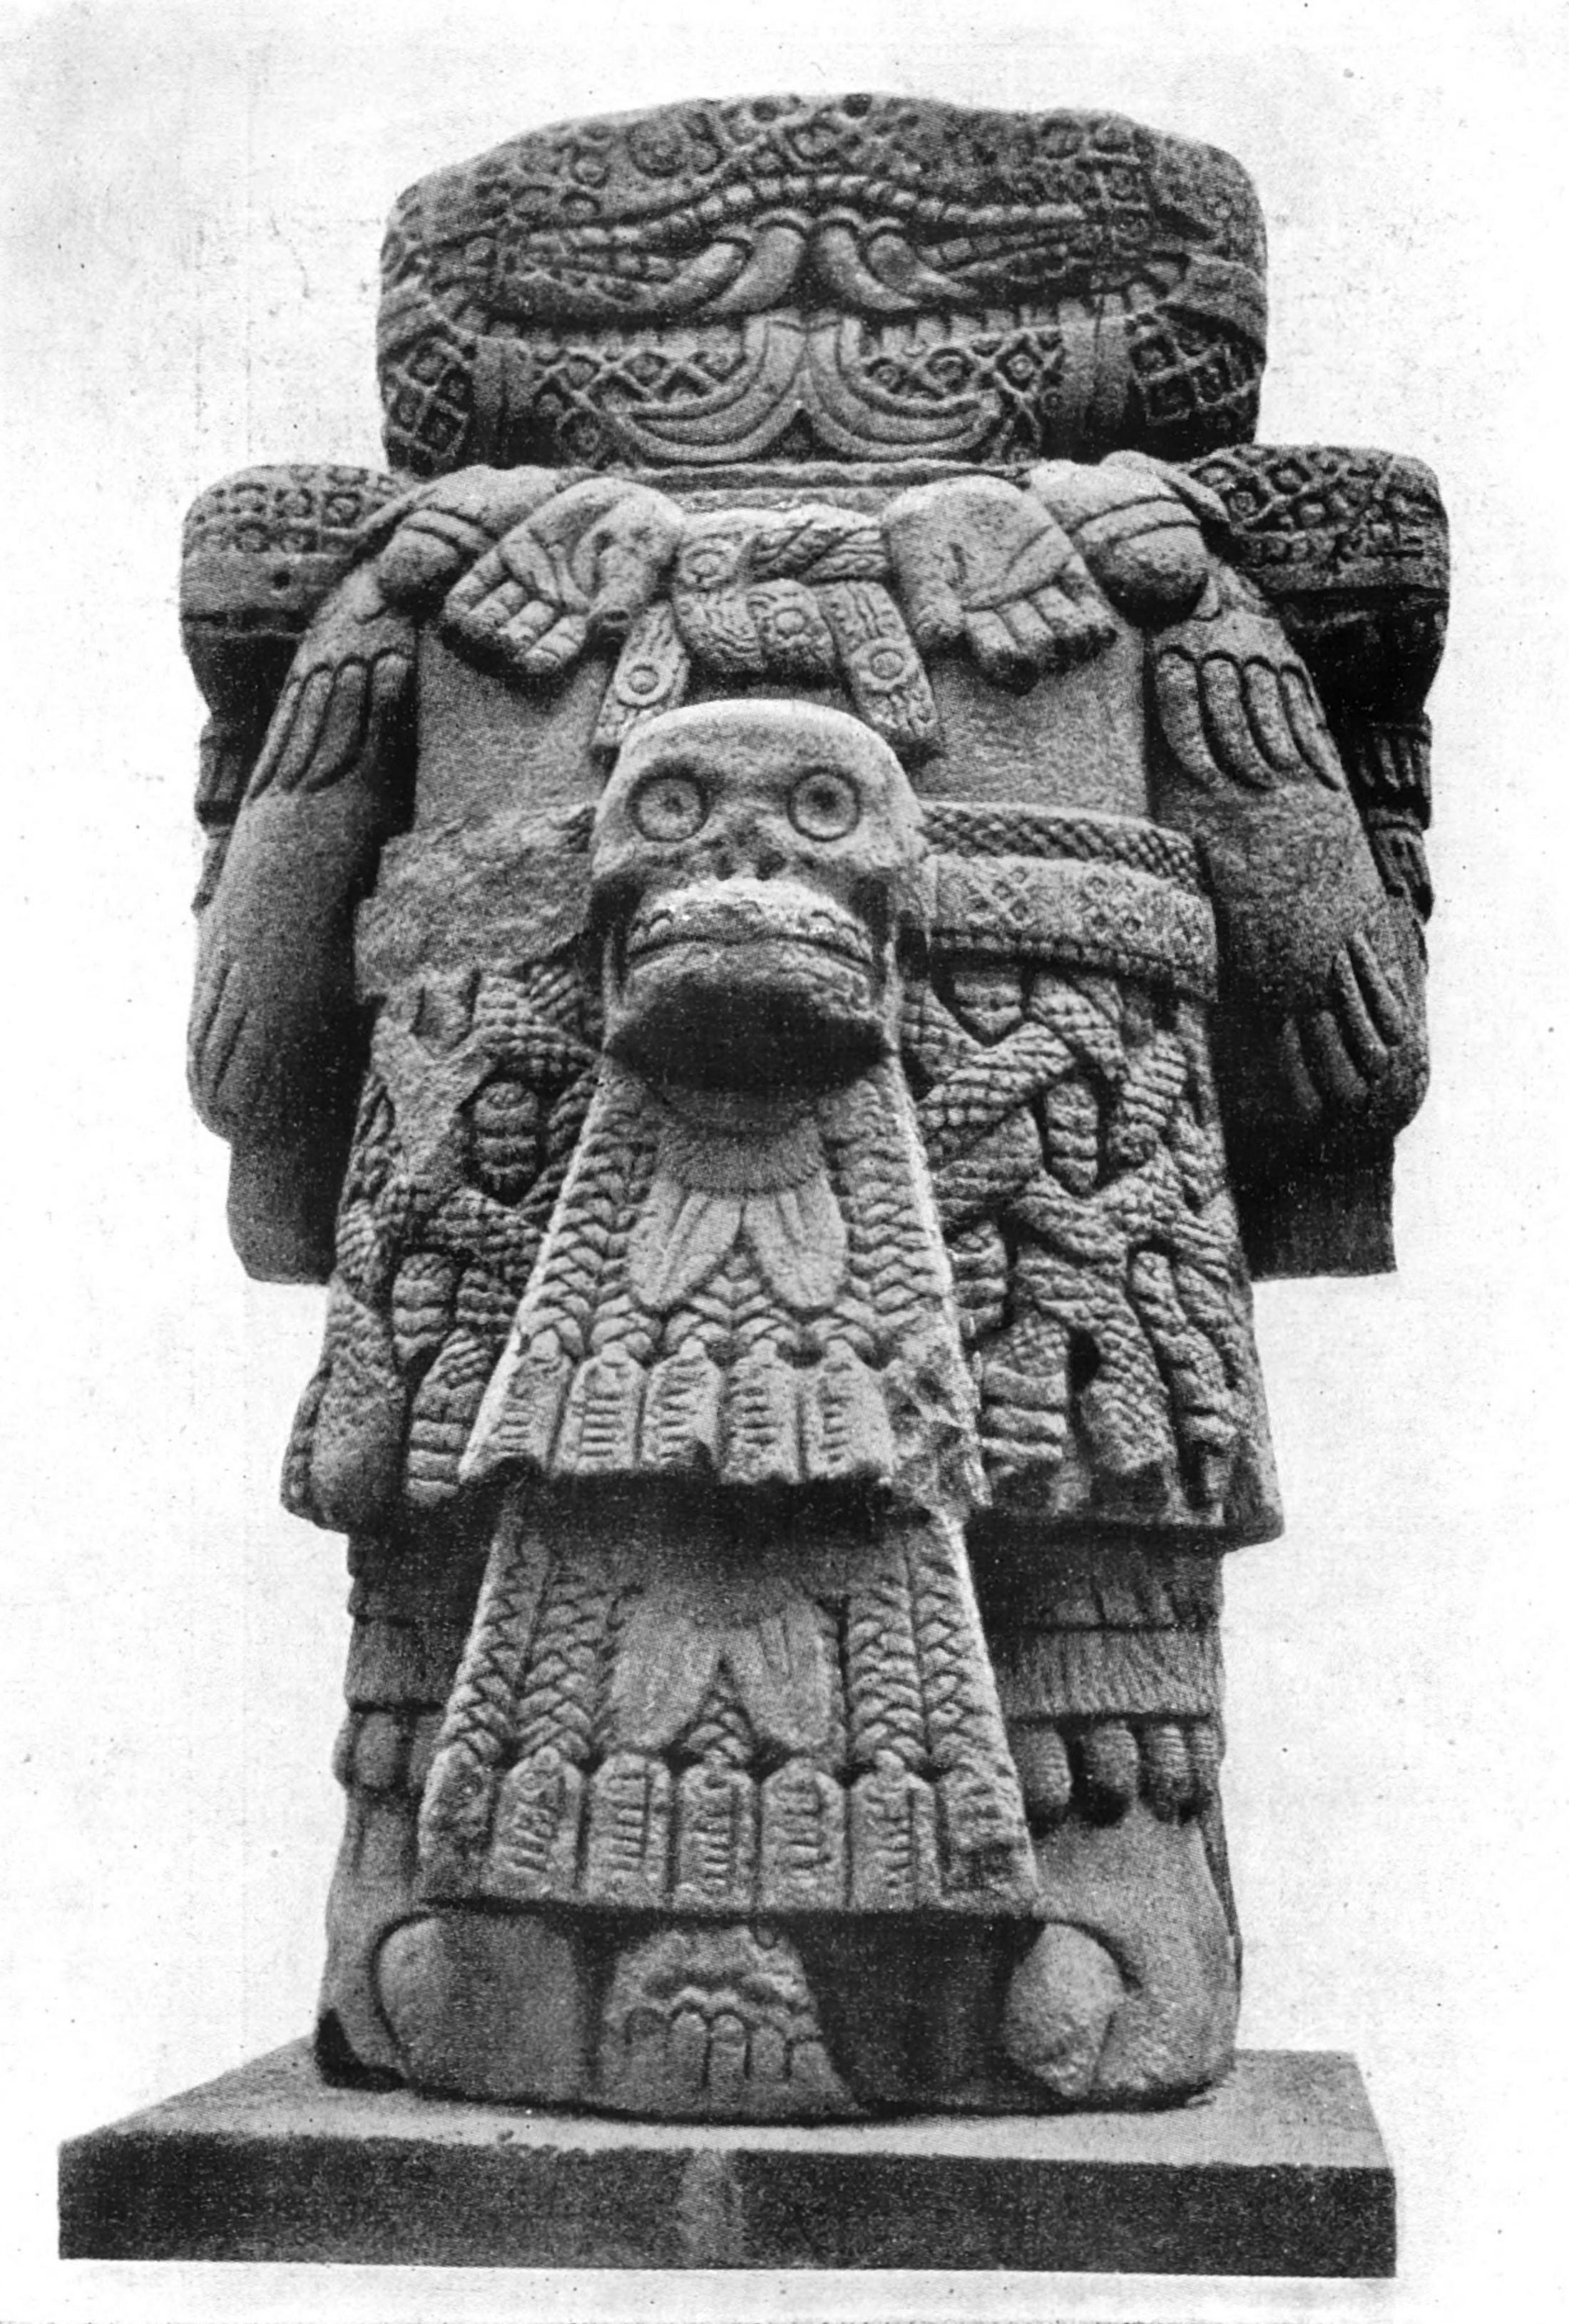 33. Богиня земли. Культура ацтеков в Мексике. Мексико, Национальный Музей.